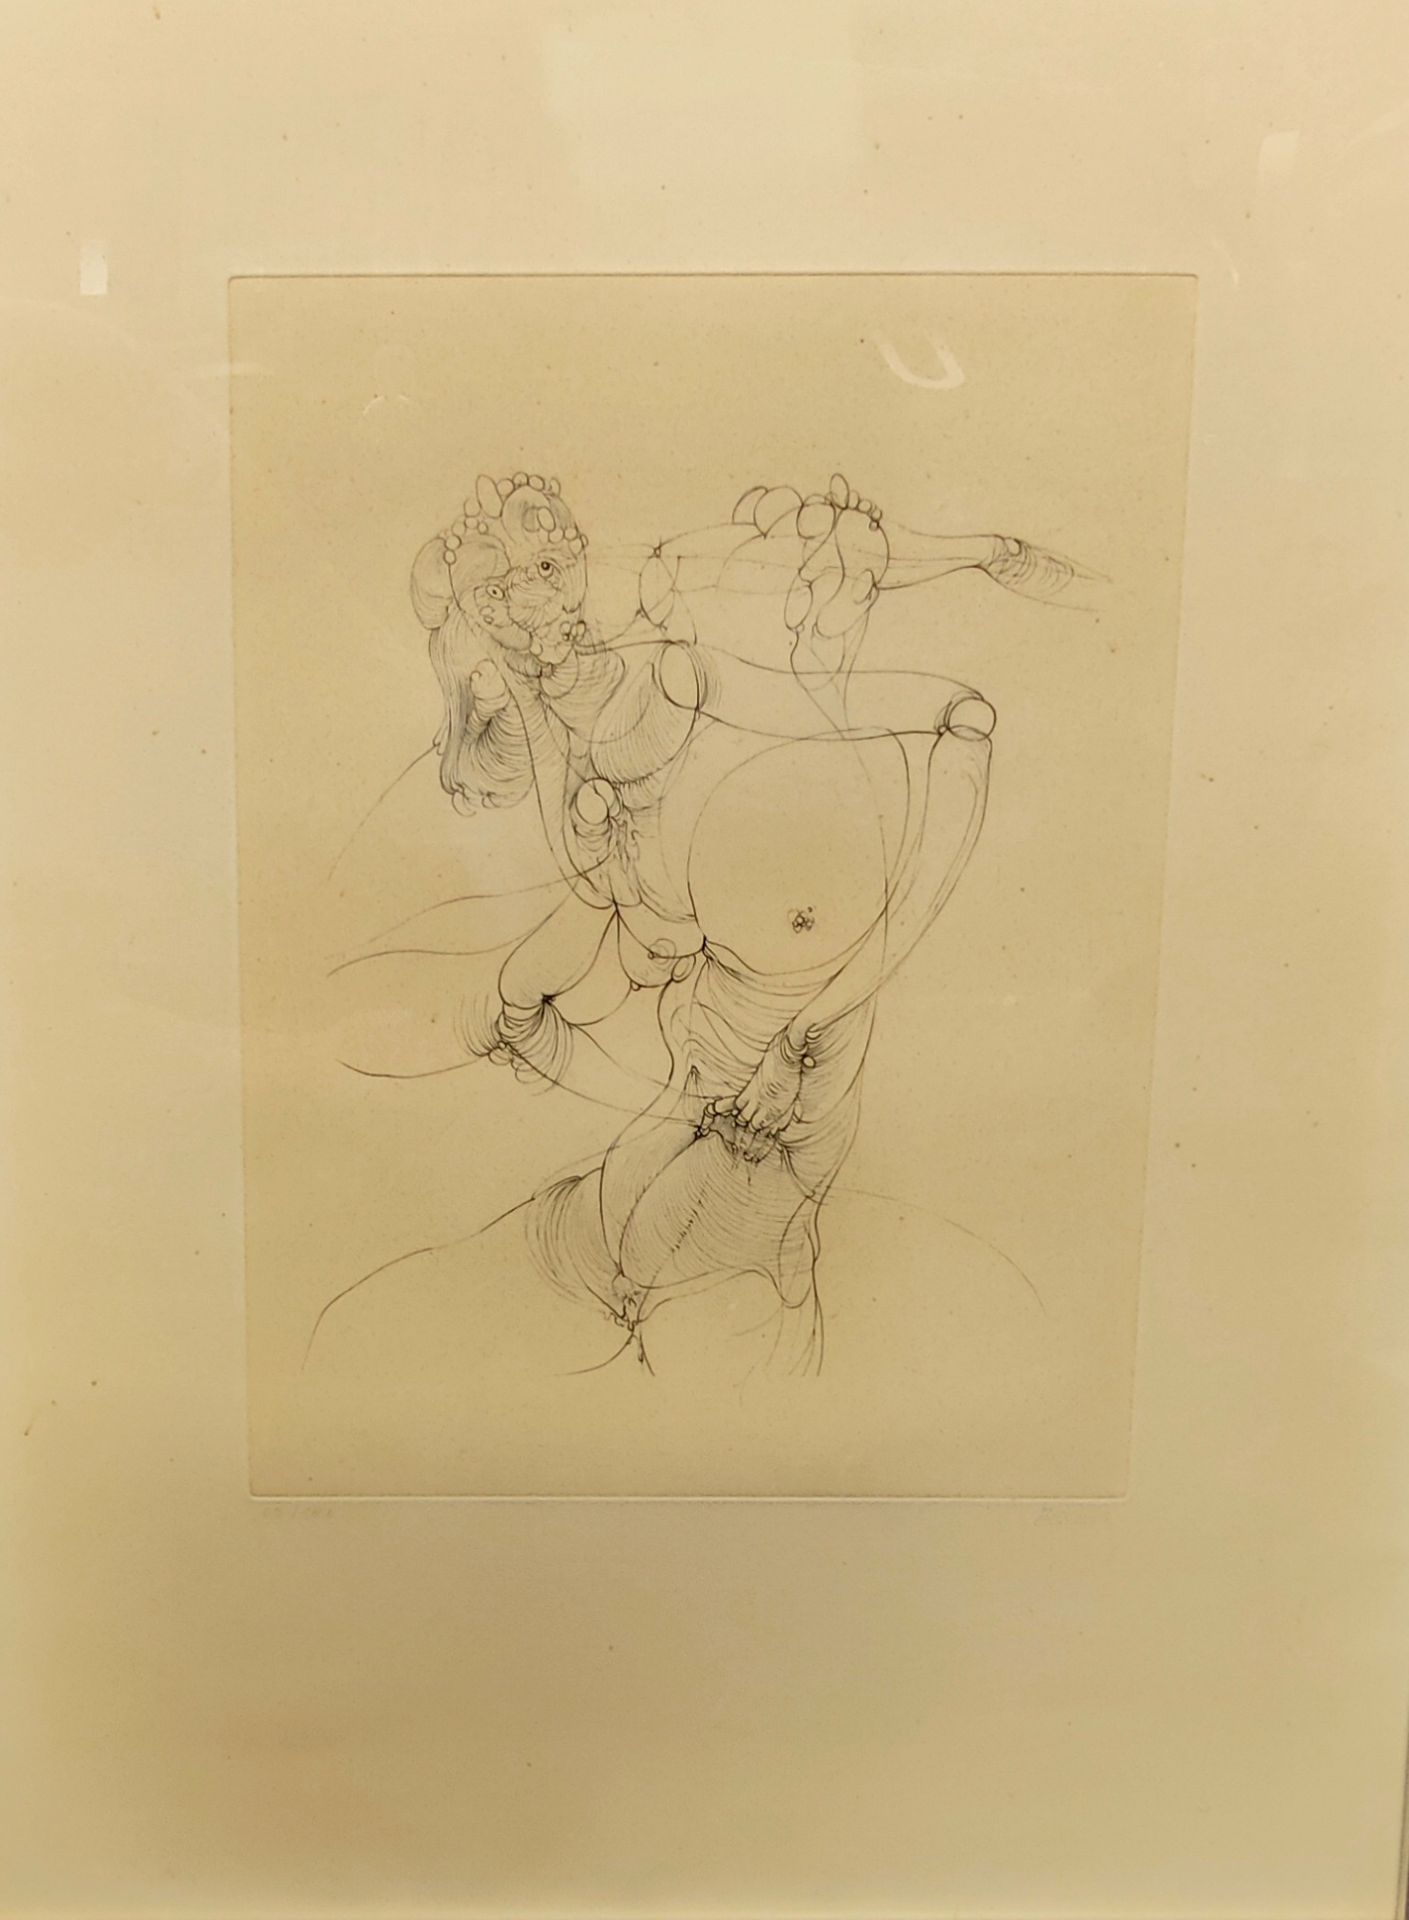 Null 汉斯-贝尔梅尔（1902-1975）无标题纸上蚀刻画，右下方有签名，左下方有编号65/120 64 x 50 cm

发黄的纸张